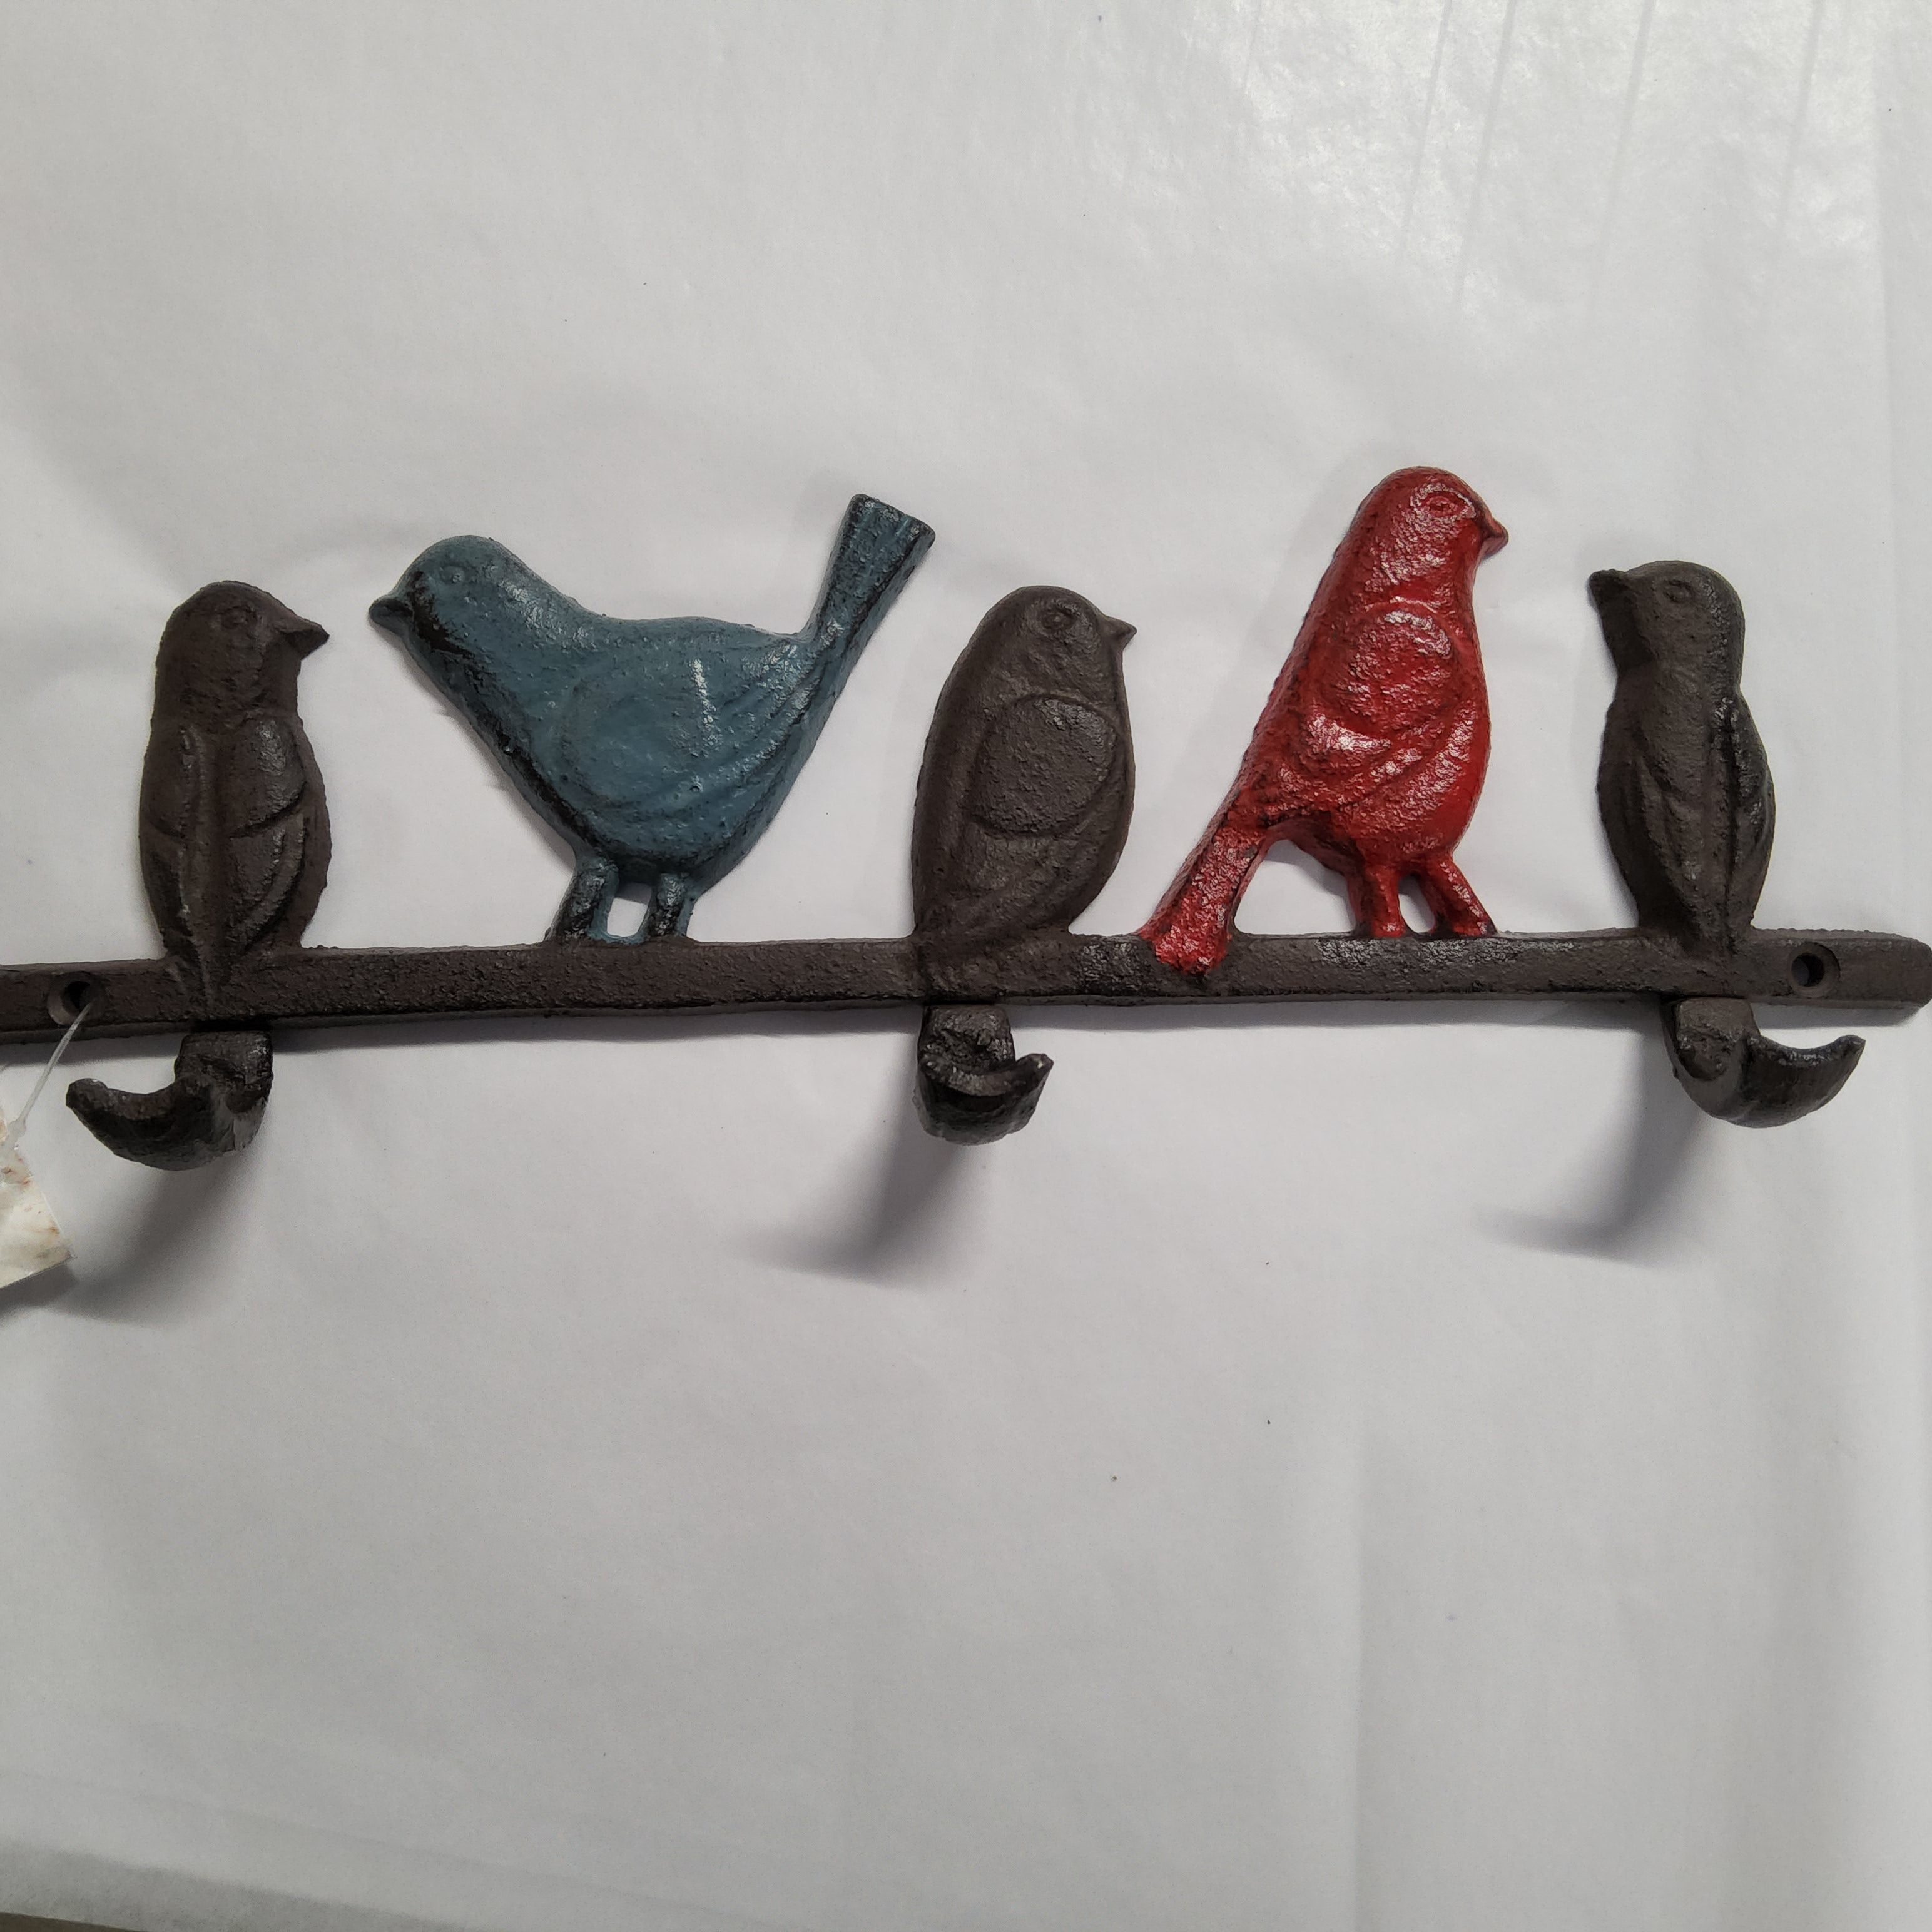 Three Hooks Rack - Cast Iron - Birds DY-211423